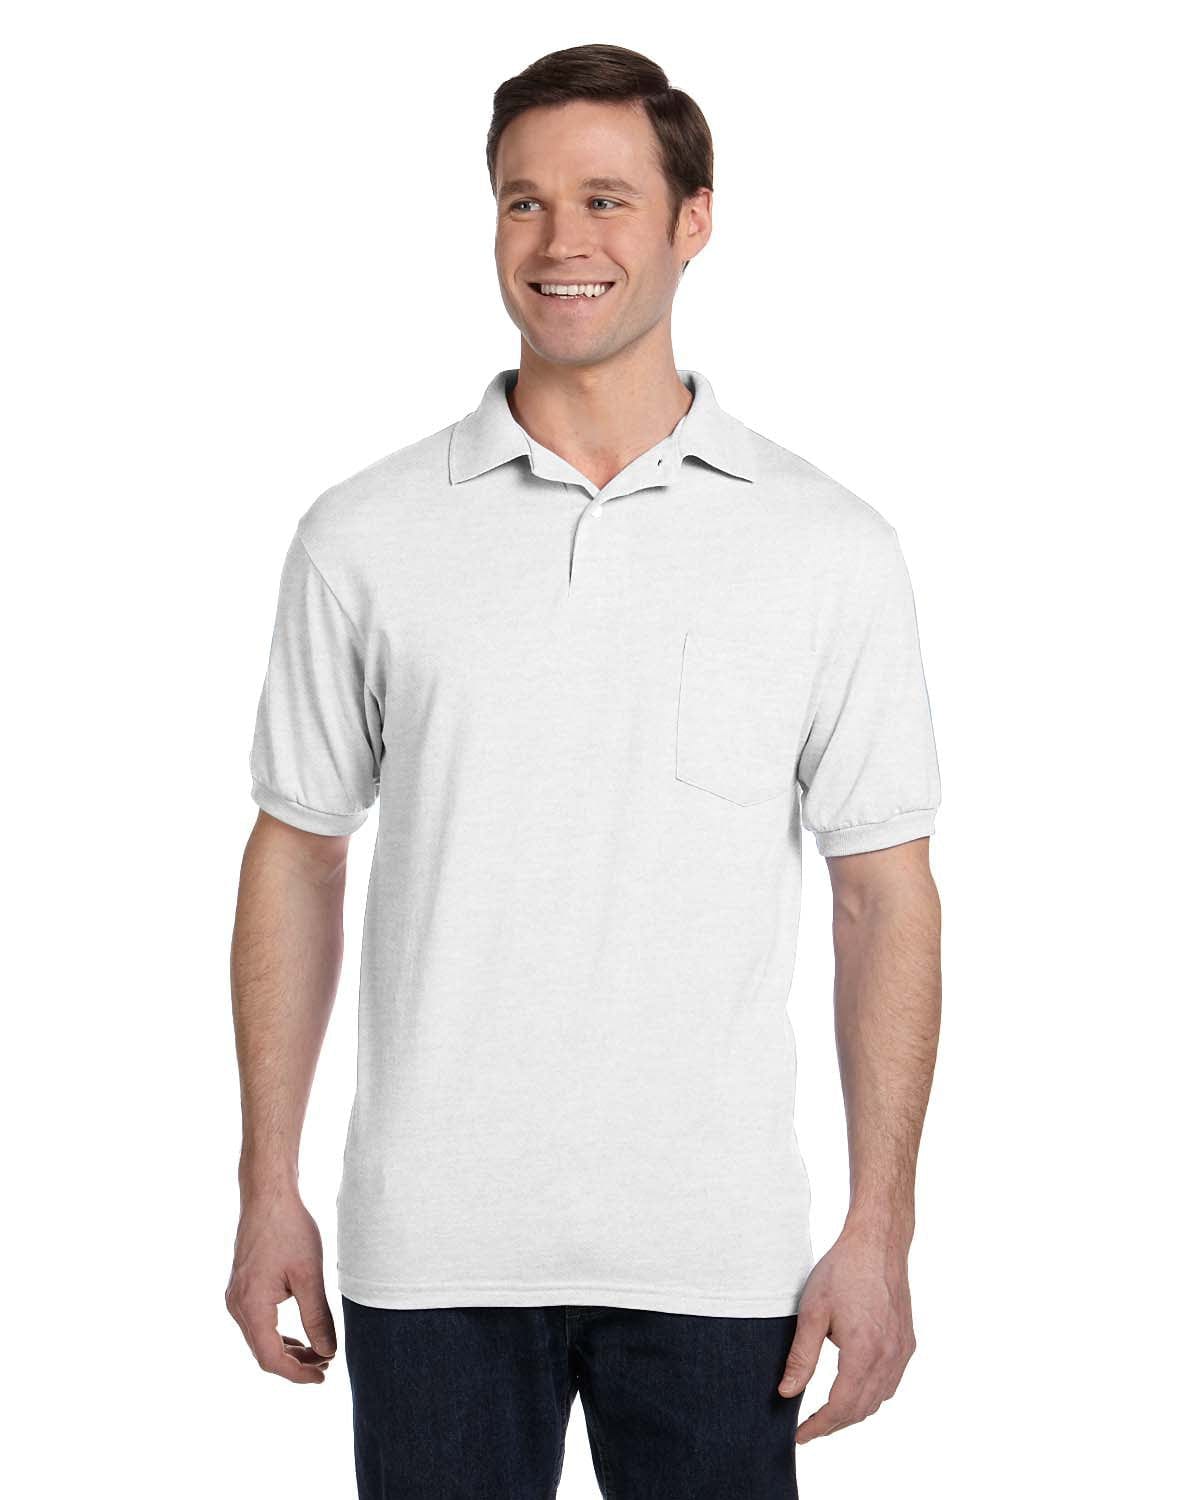 Hanes 50/50 Jersey Knit Pocket Polo Shirt